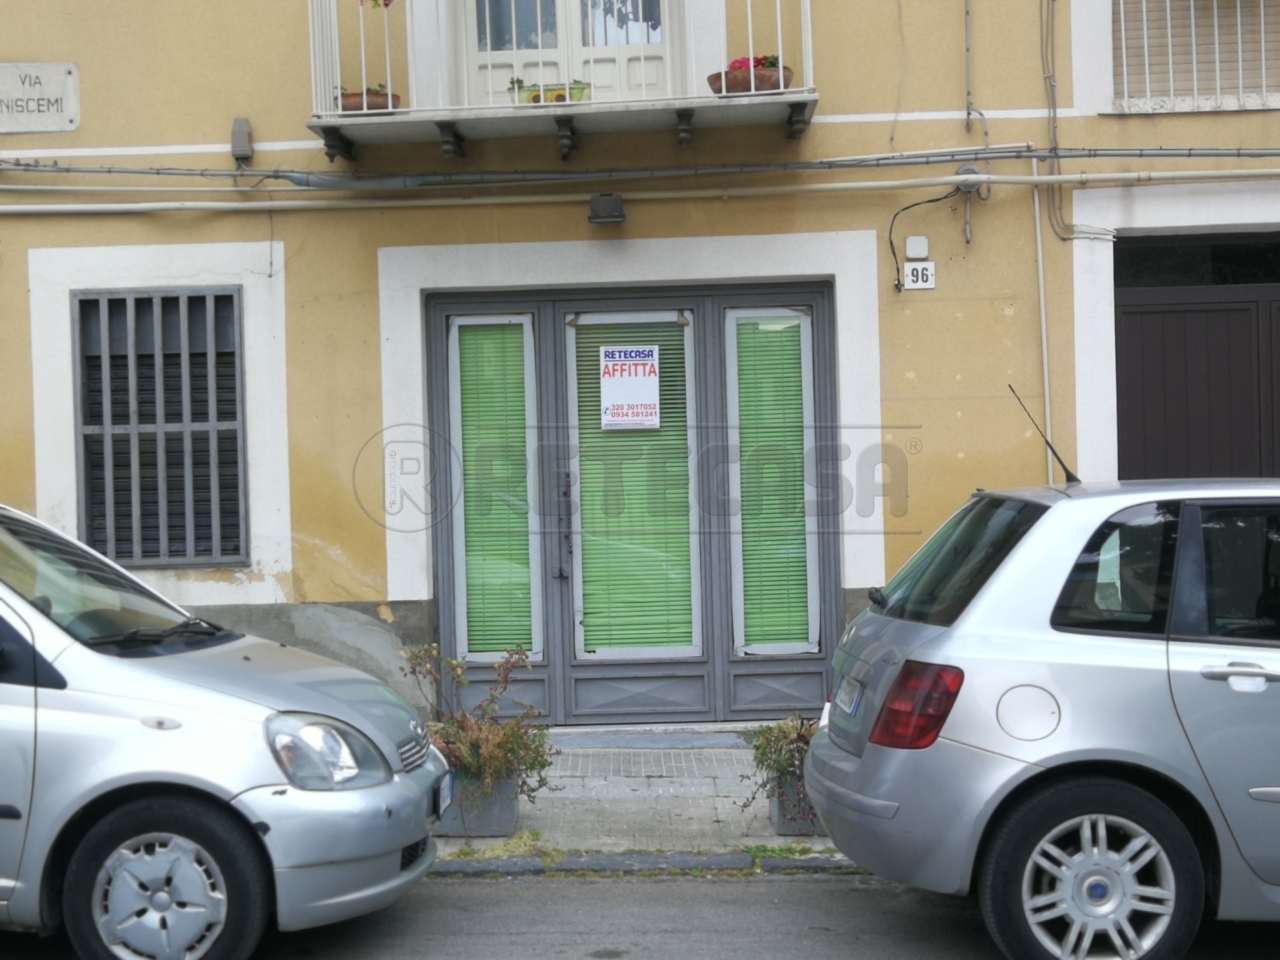 Laboratorio in affitto a Caltanissetta, 2 locali, prezzo € 250 | PortaleAgenzieImmobiliari.it